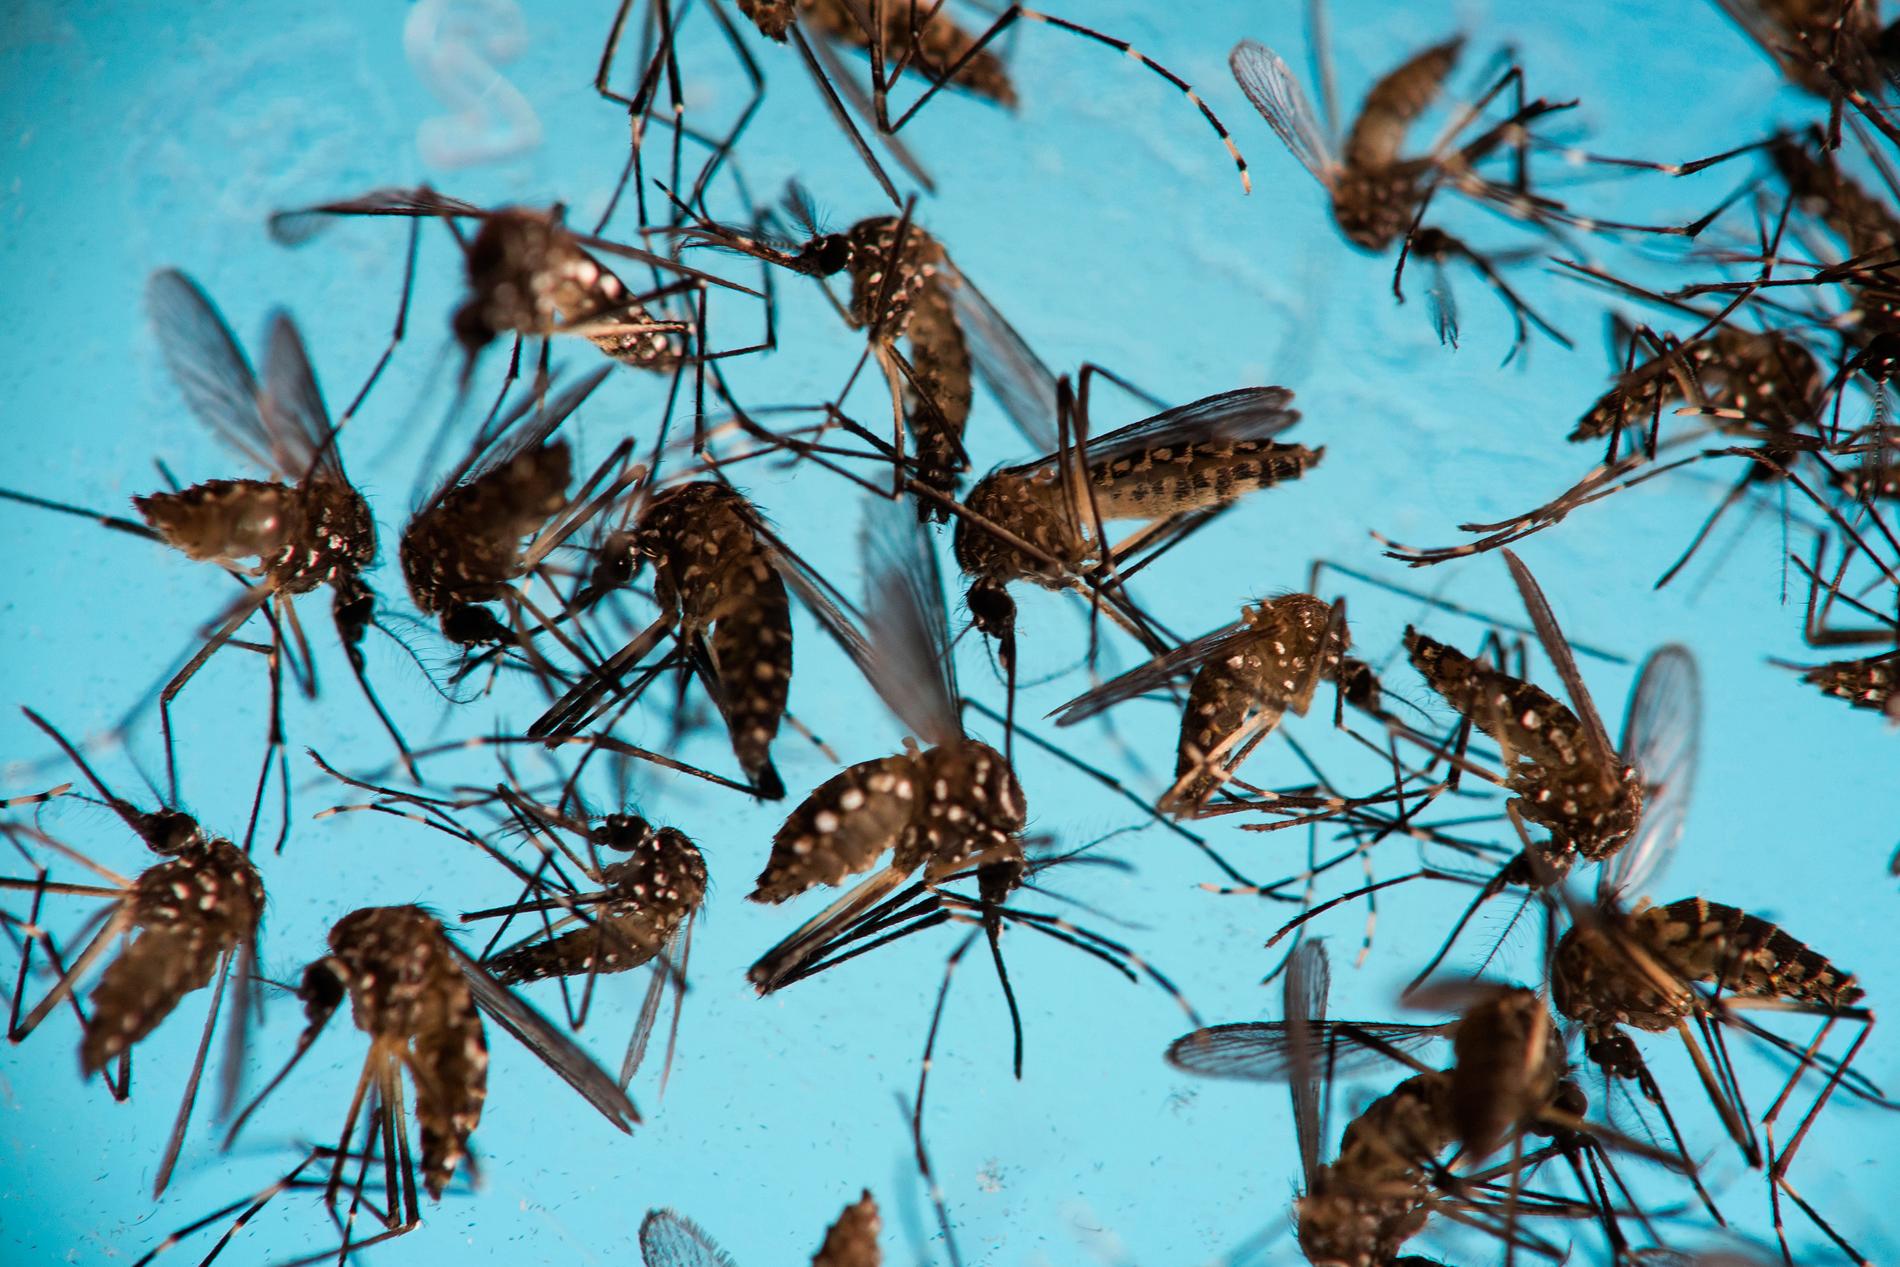 Det ändrade klimatet kan med tiden få myggor av arten Aedes aegypti att etablera sig i Europa. Myggorna sprider sjukdomar som gula febern och dengue-feber. Arkivbild.